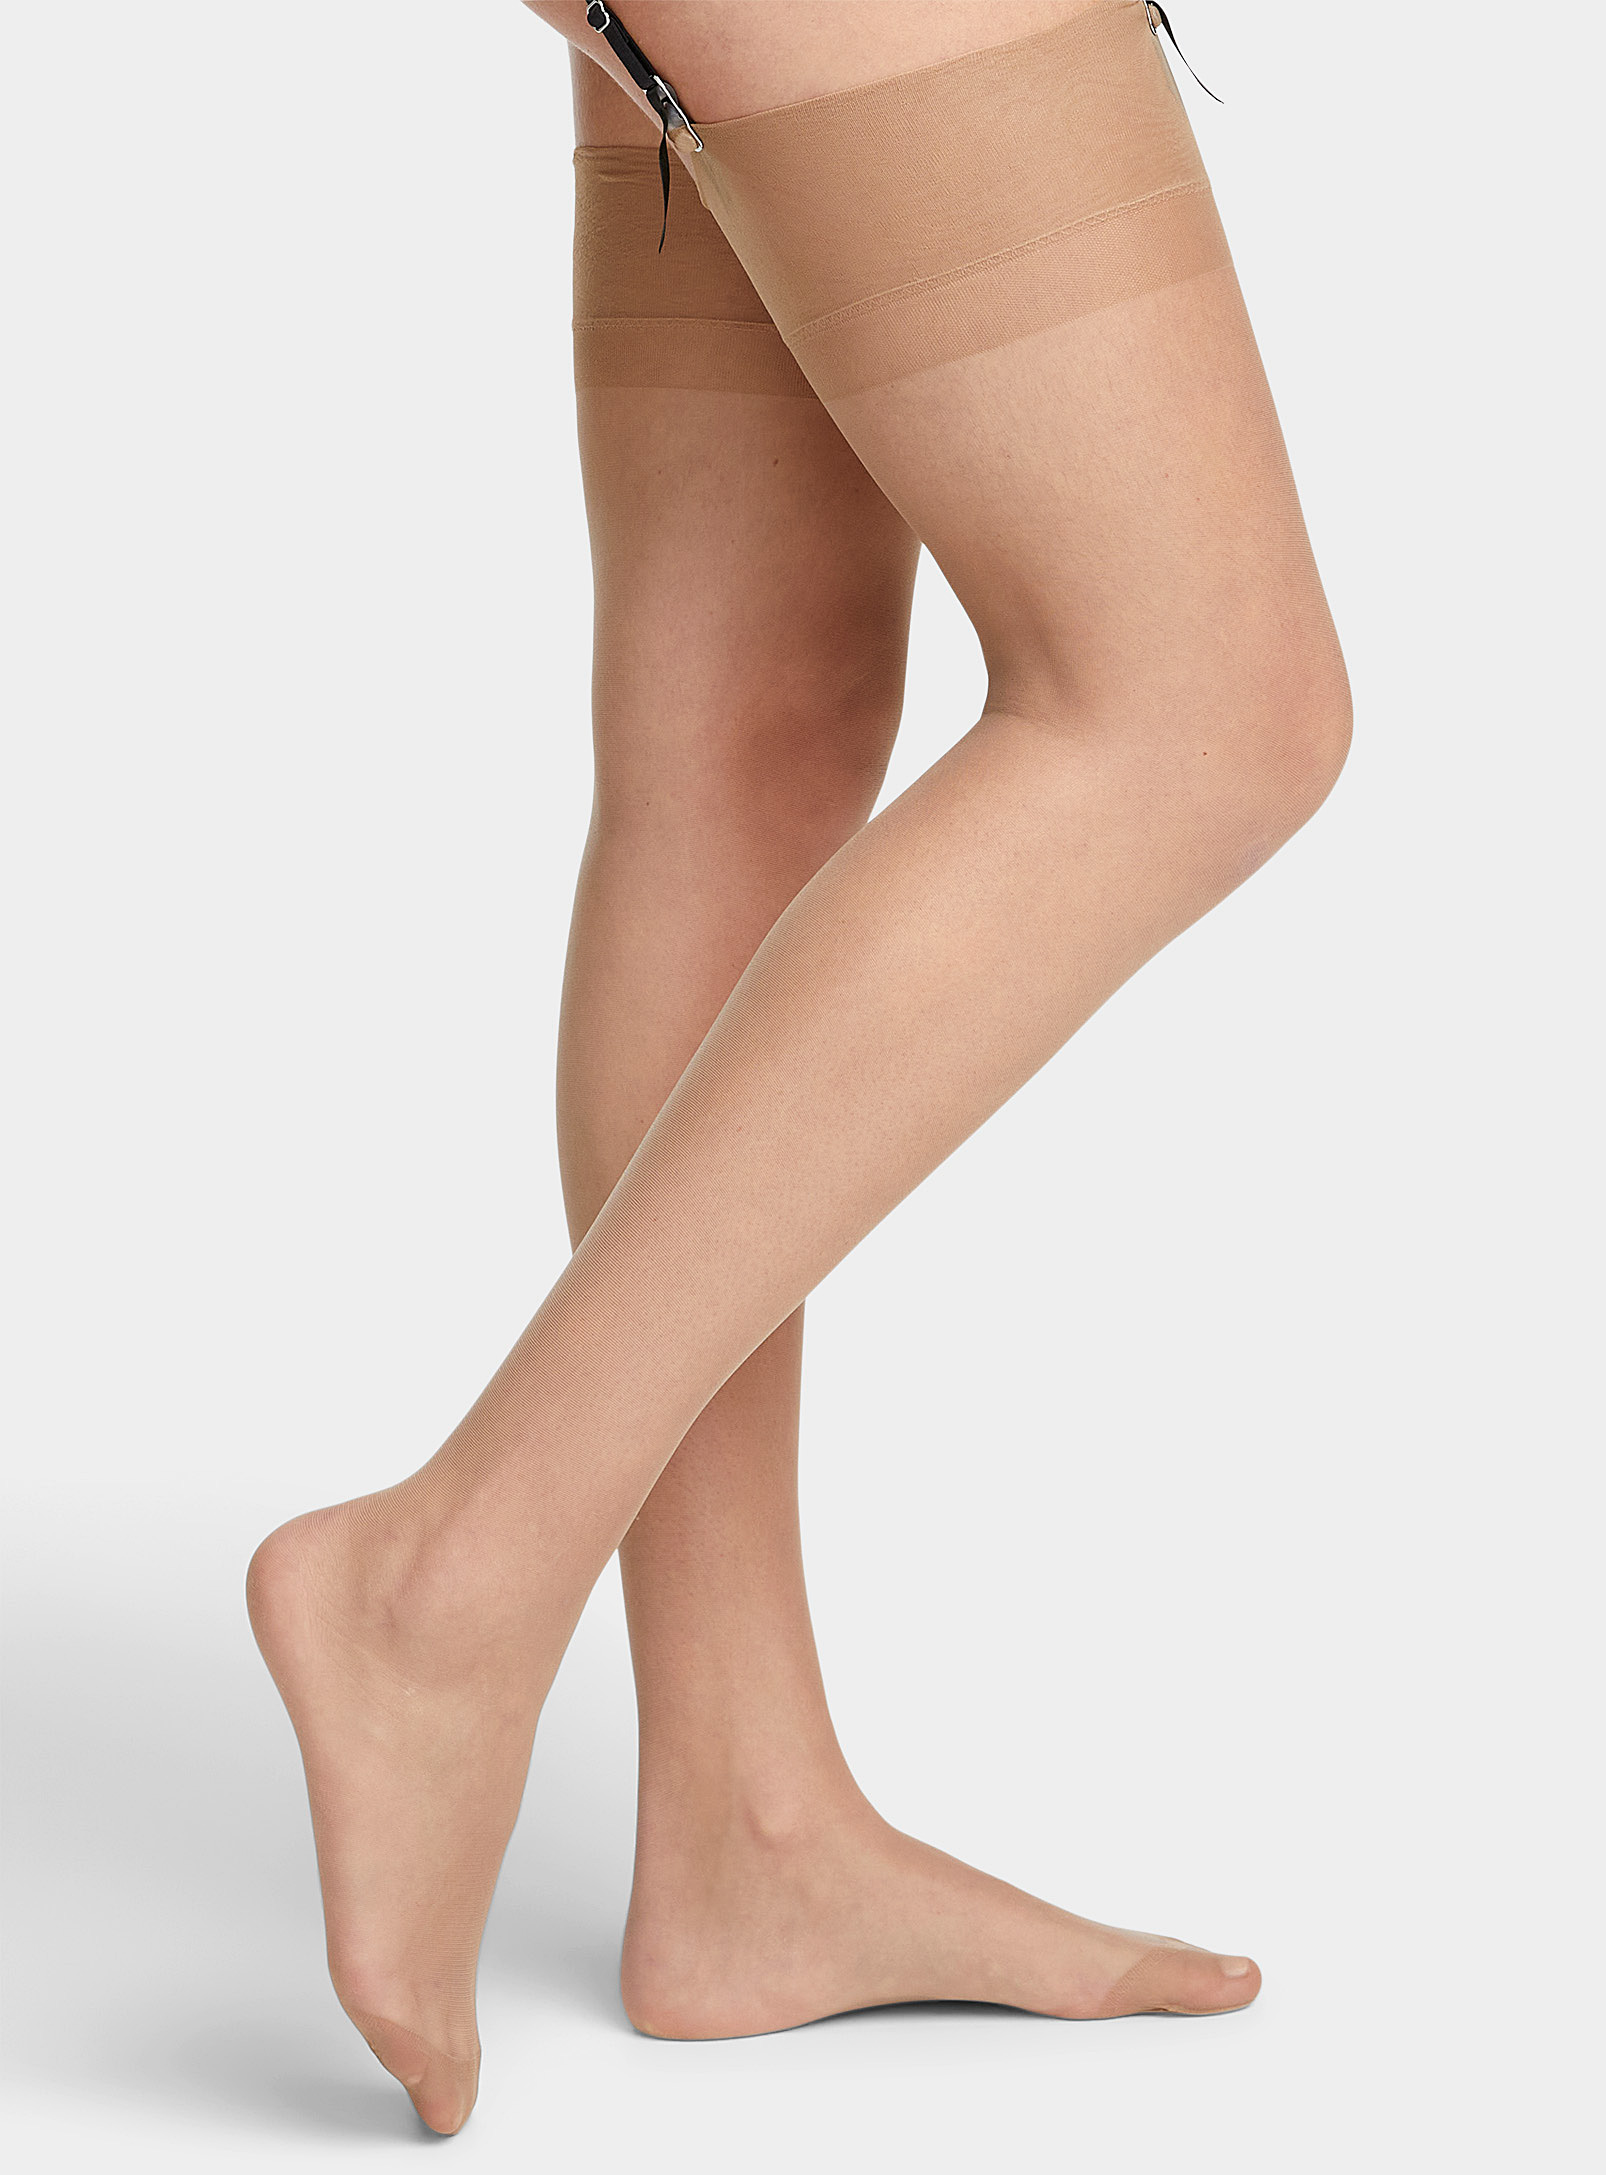 Bluebella Sheer Garter Stockings In Tan